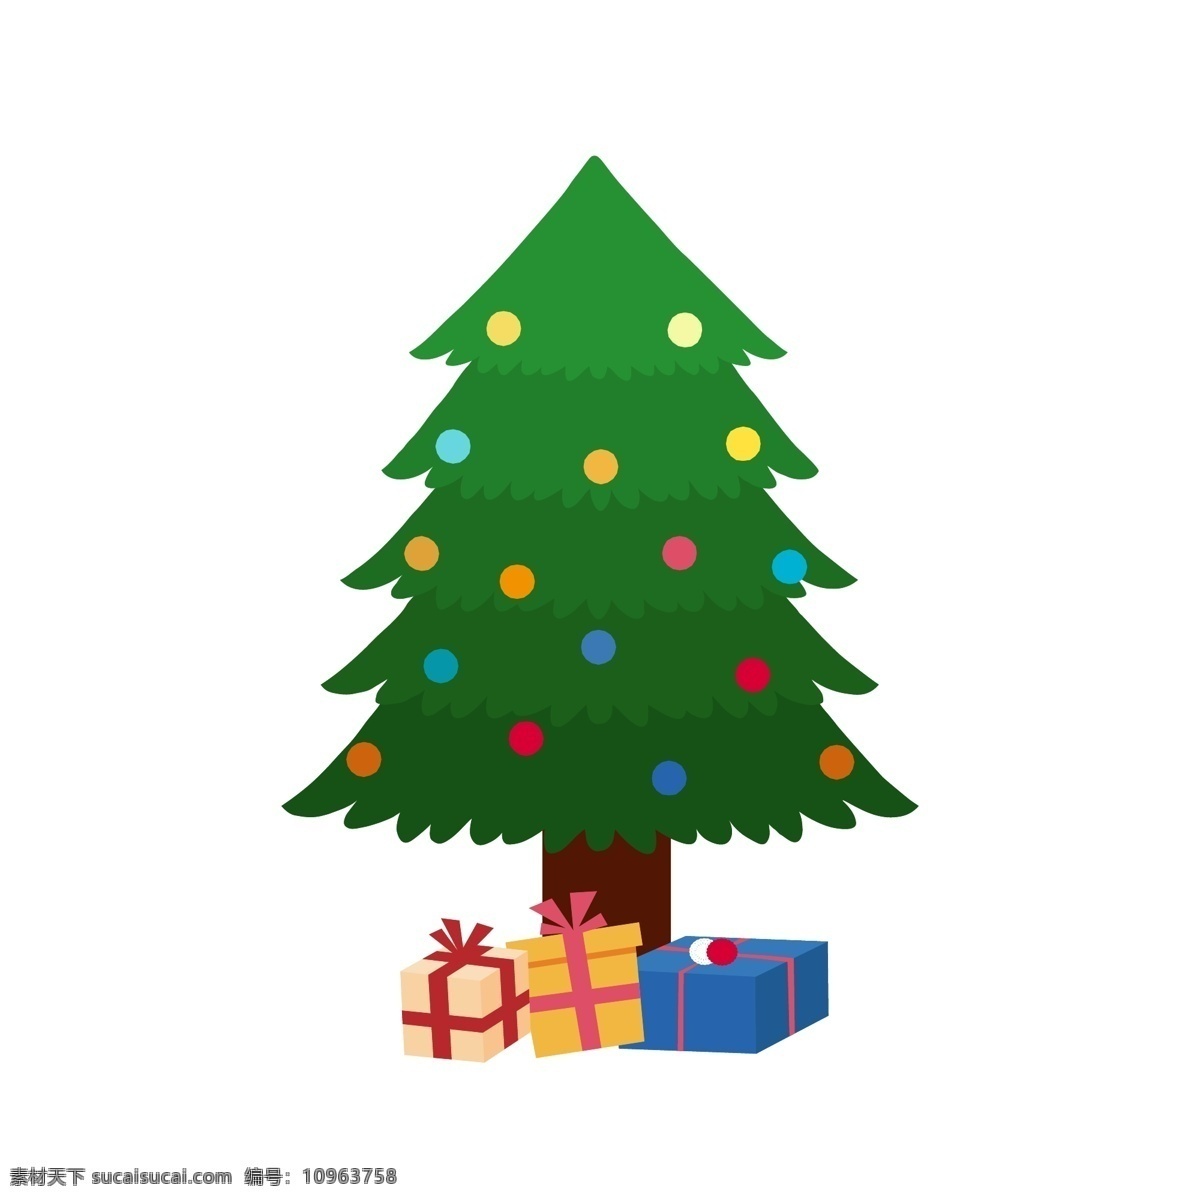 圣诞节 卡通 扁平 圣诞树 礼物 元素 可爱 彩色 海报 手绘 卡通手绘 圣诞 贺卡 装饰 图案 卡通装饰 边框 星星